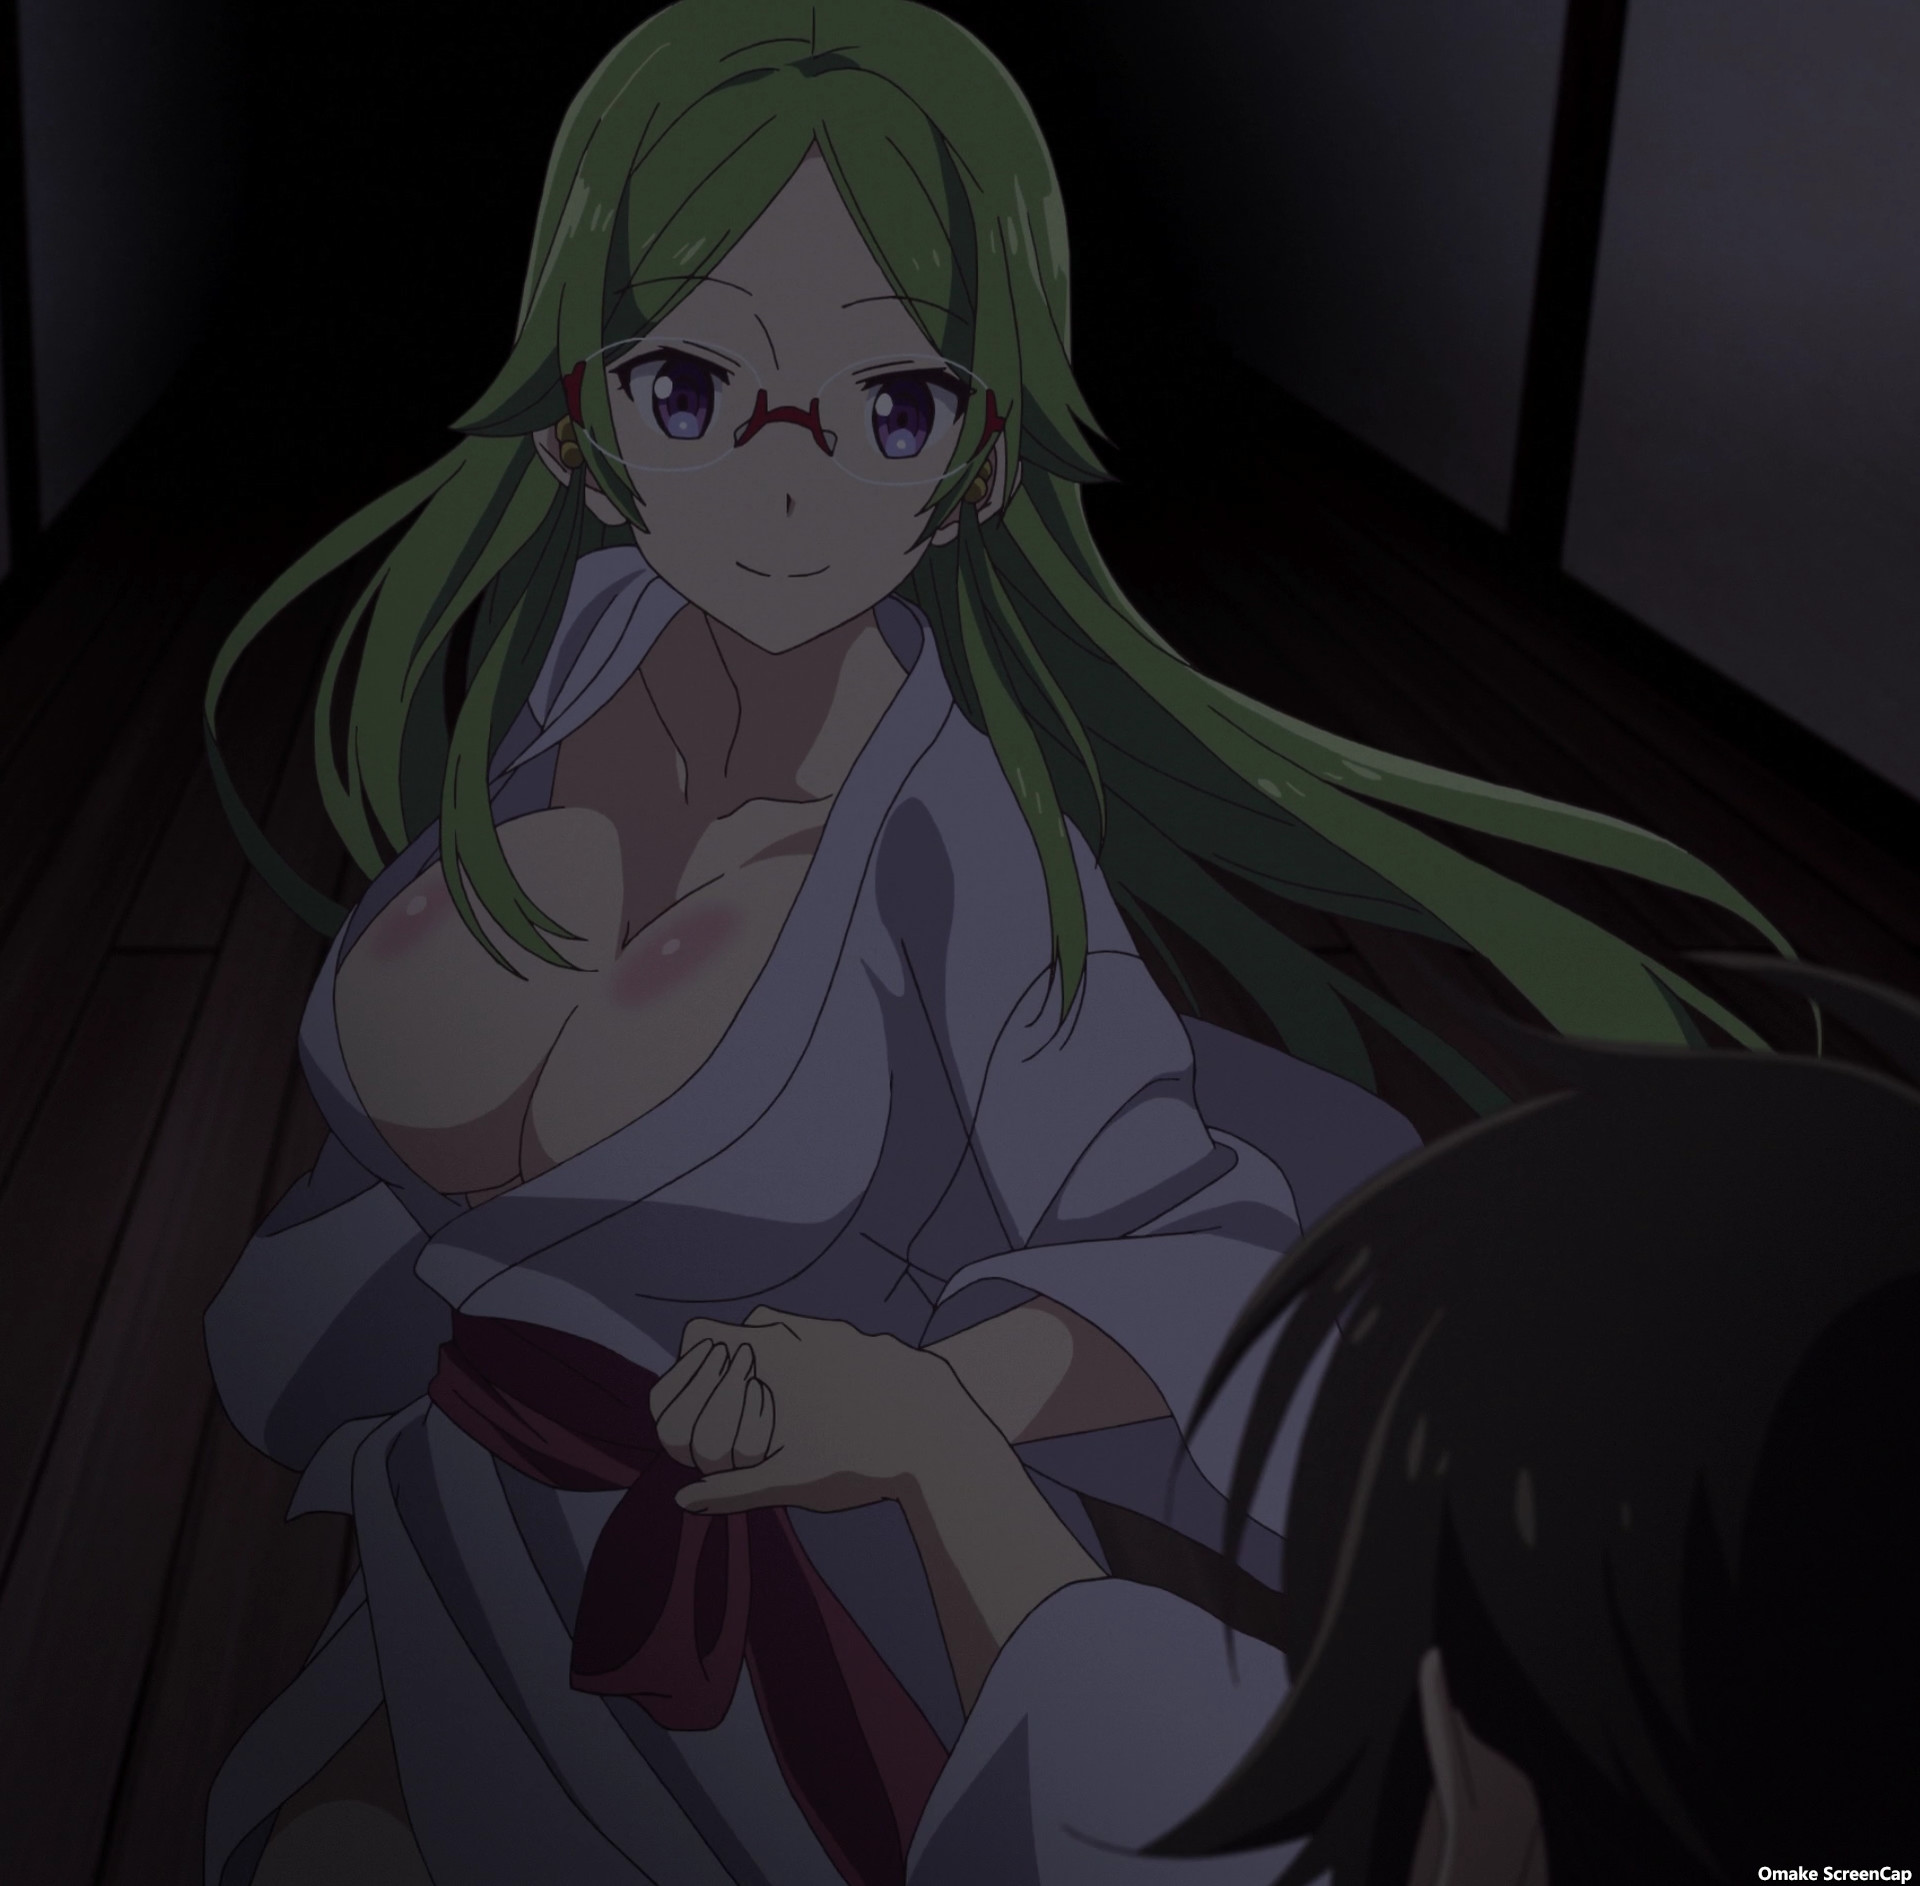 Megami-ryou no Ryoubo-kun.: Temporada 1 - Serene the Shut-in / The Goddess  Dormitory Goes on Vacation (2021) - (S1E5) - Imagens de fundo — The Movie  Database (TMDB)